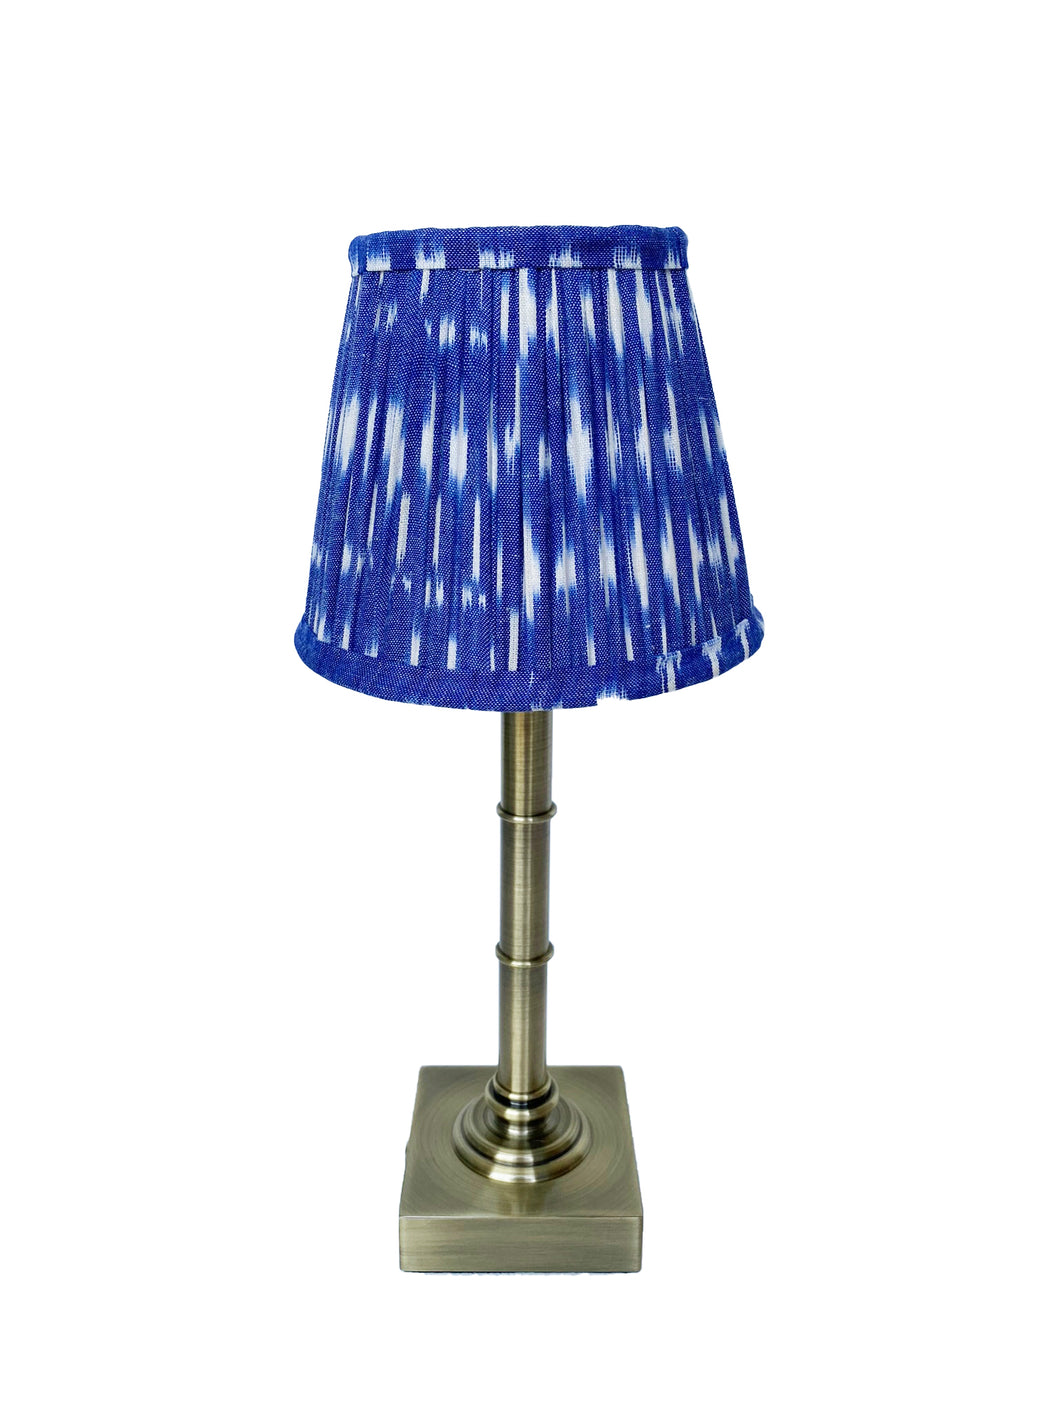 16cm Indigo blue ikat gathered lampshade